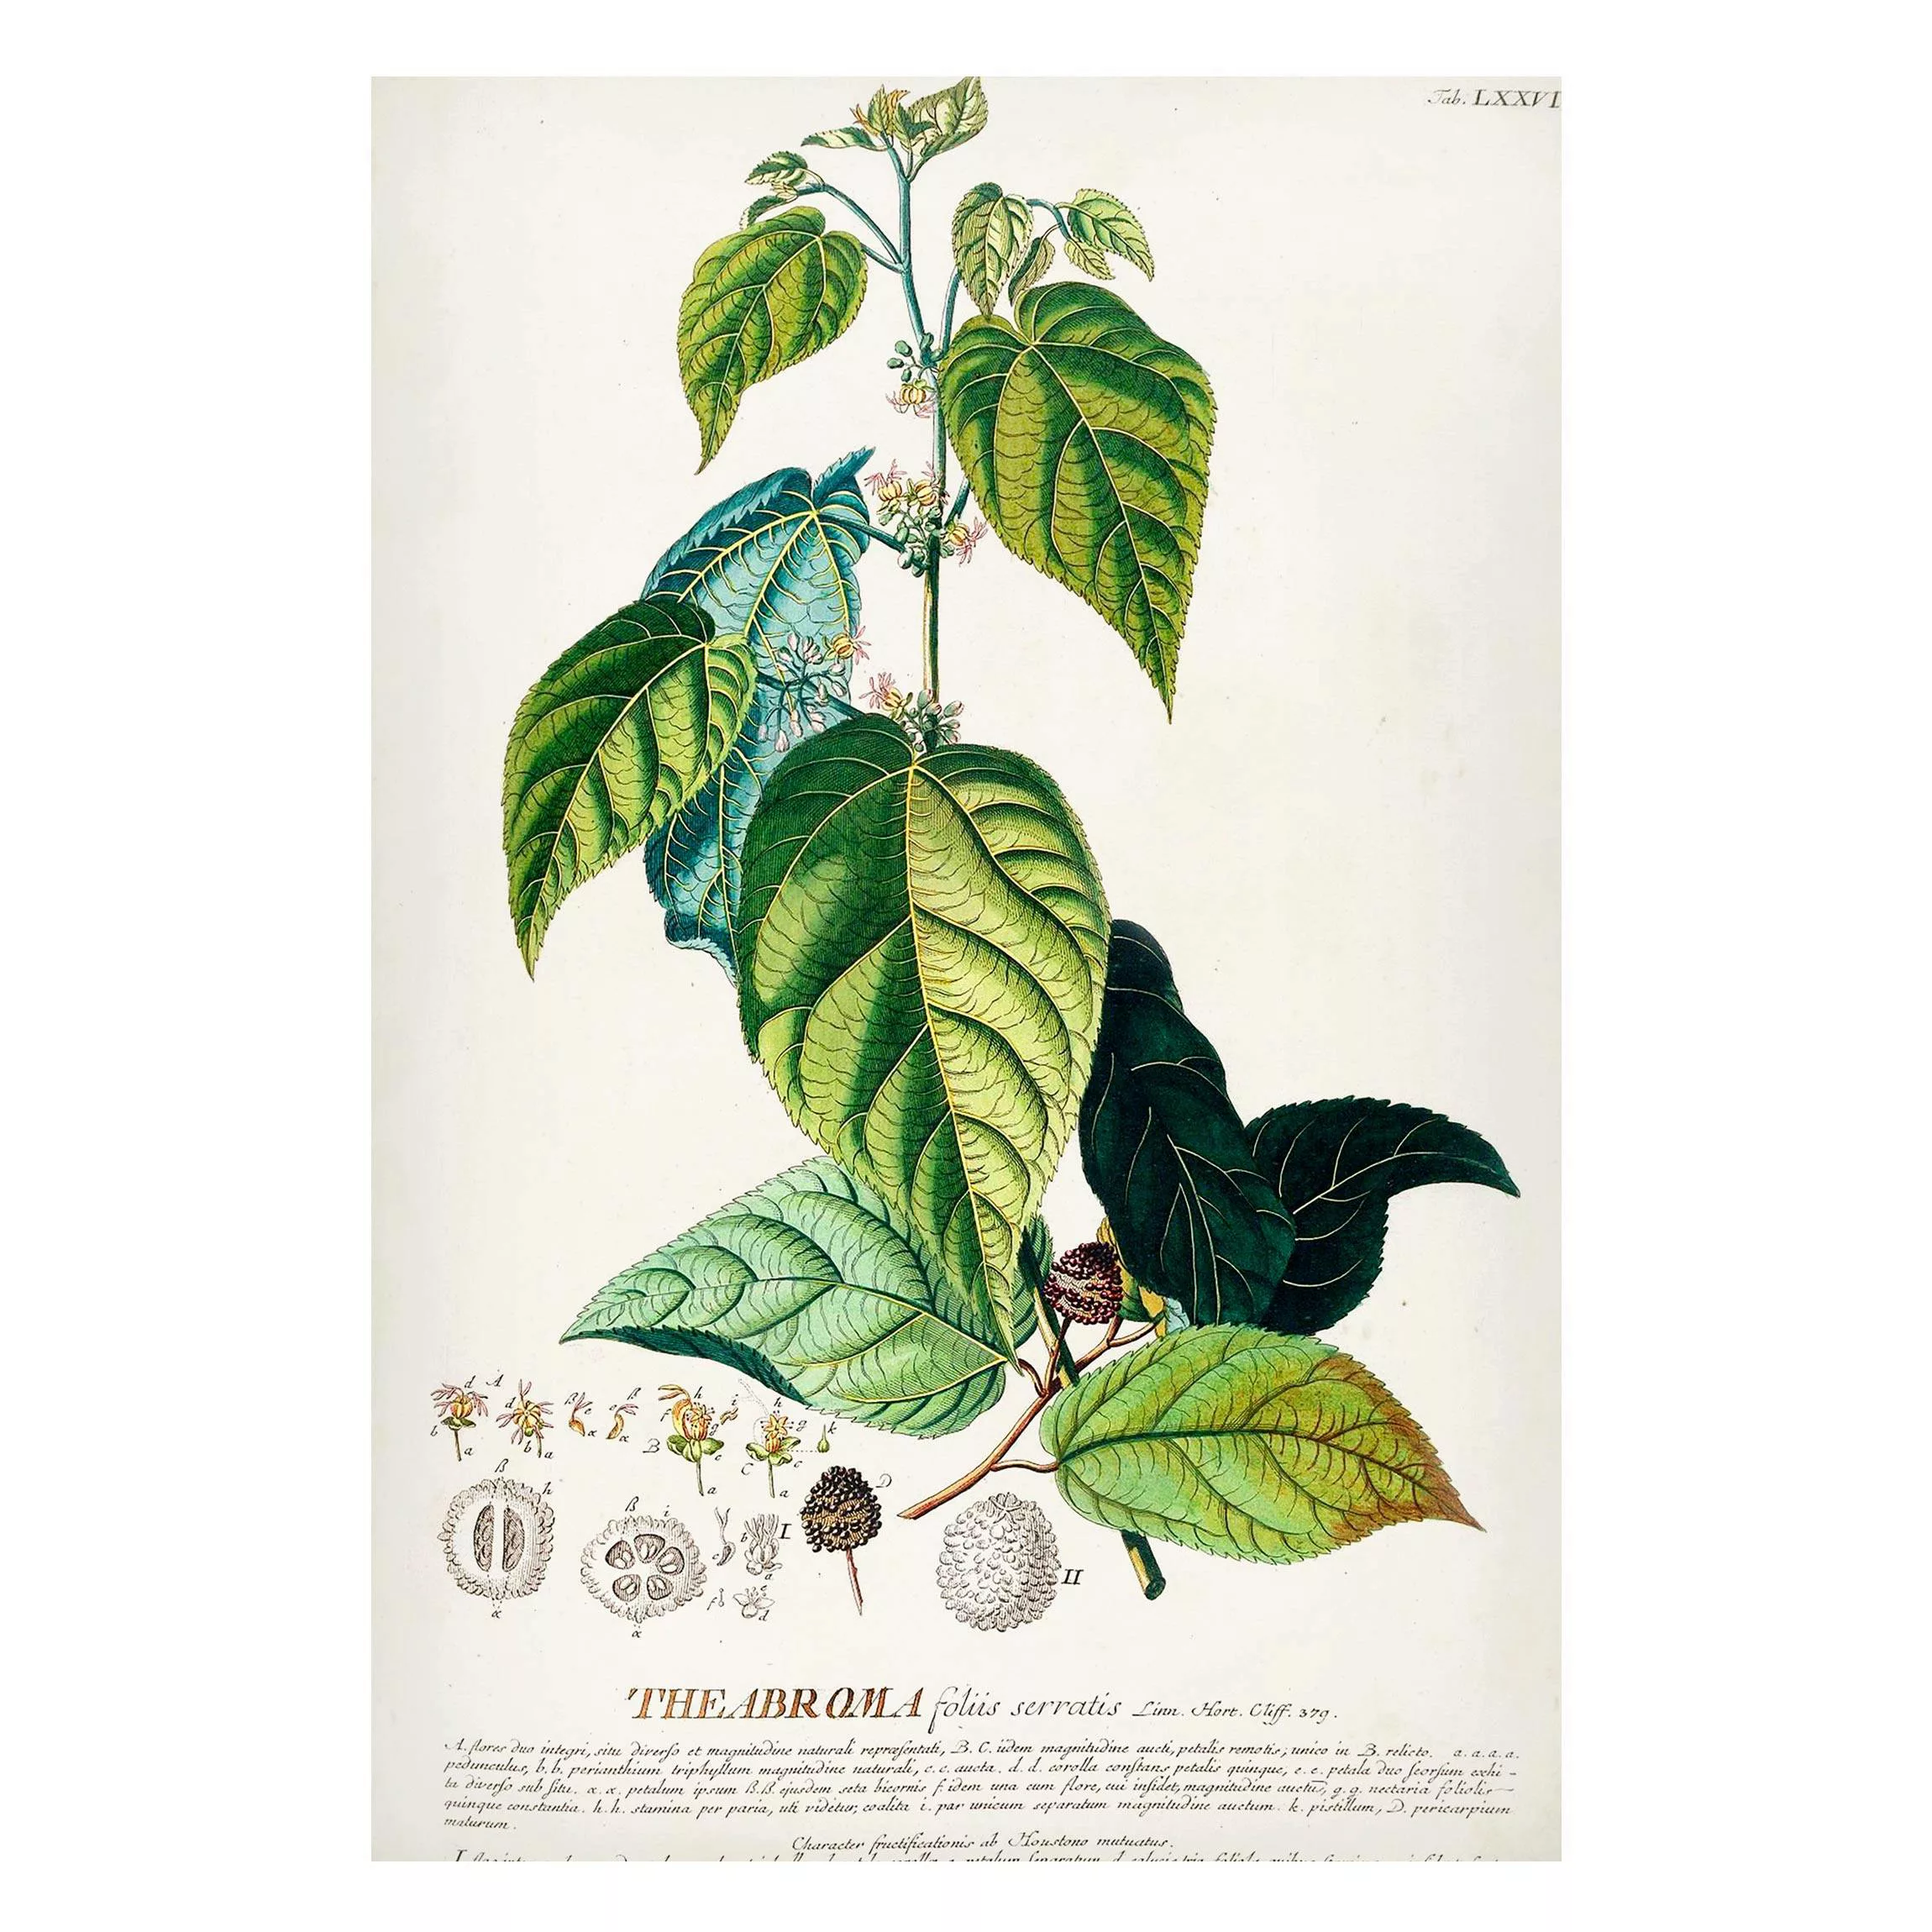 Magnettafel Blumen - Hochformat 2:3 Vintage Botanik Illustration Kakao günstig online kaufen